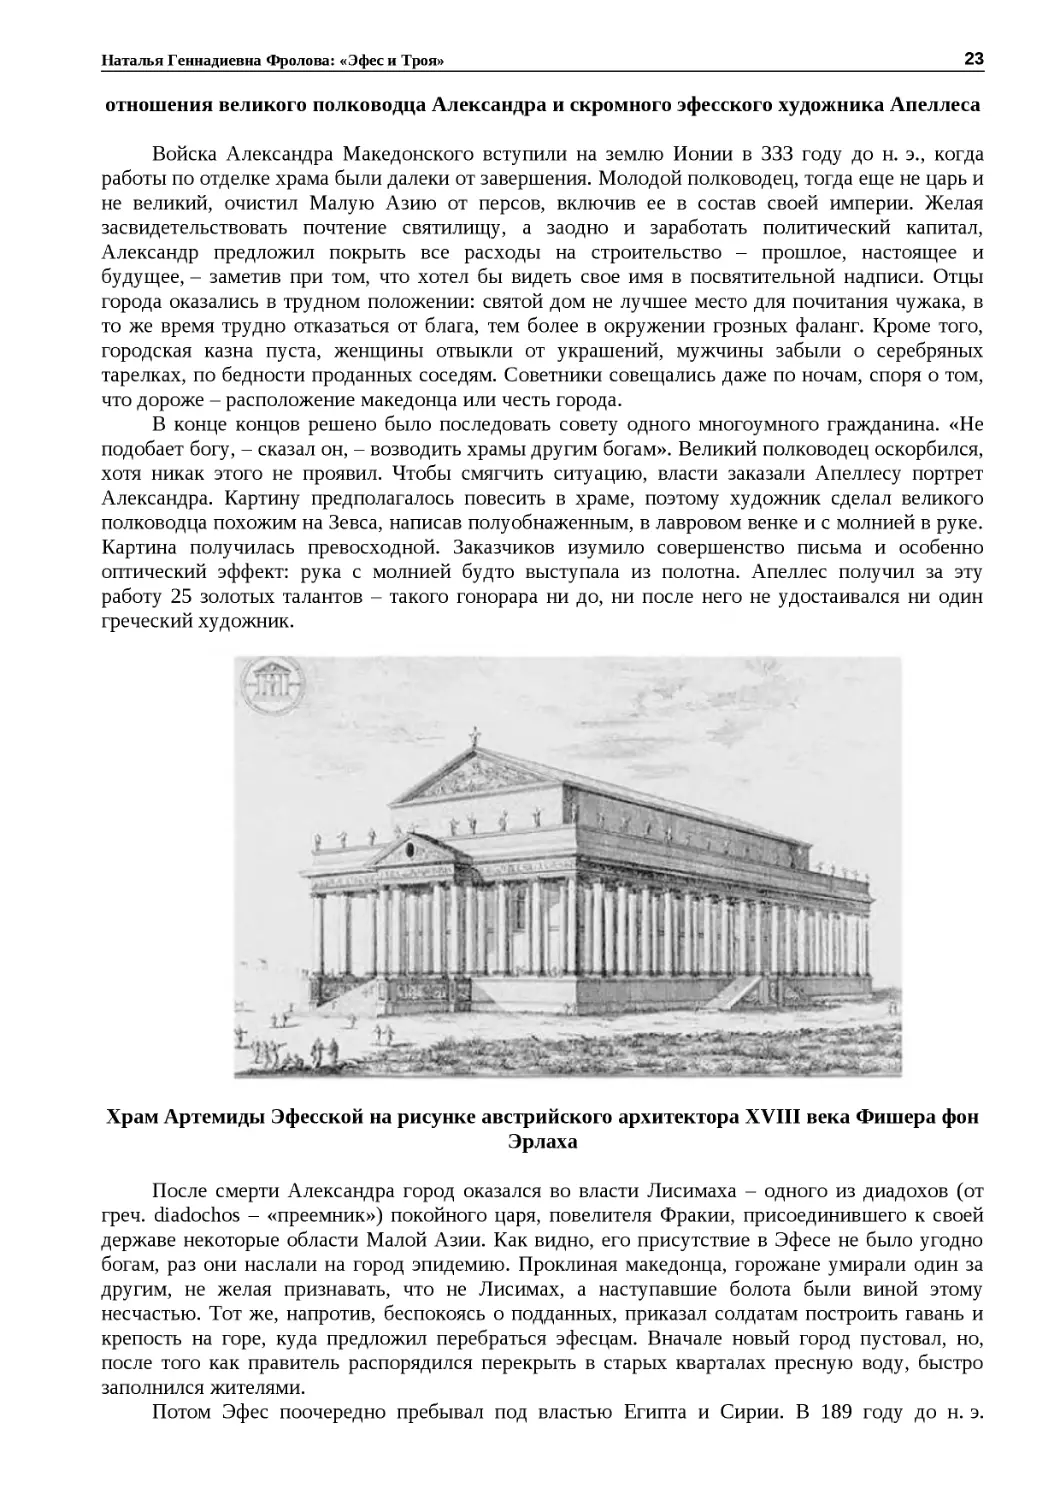 ﻿Храм Артемиды Эфесской на рисунке австрийского архитектора XVIII века Фишера фон Эрлах